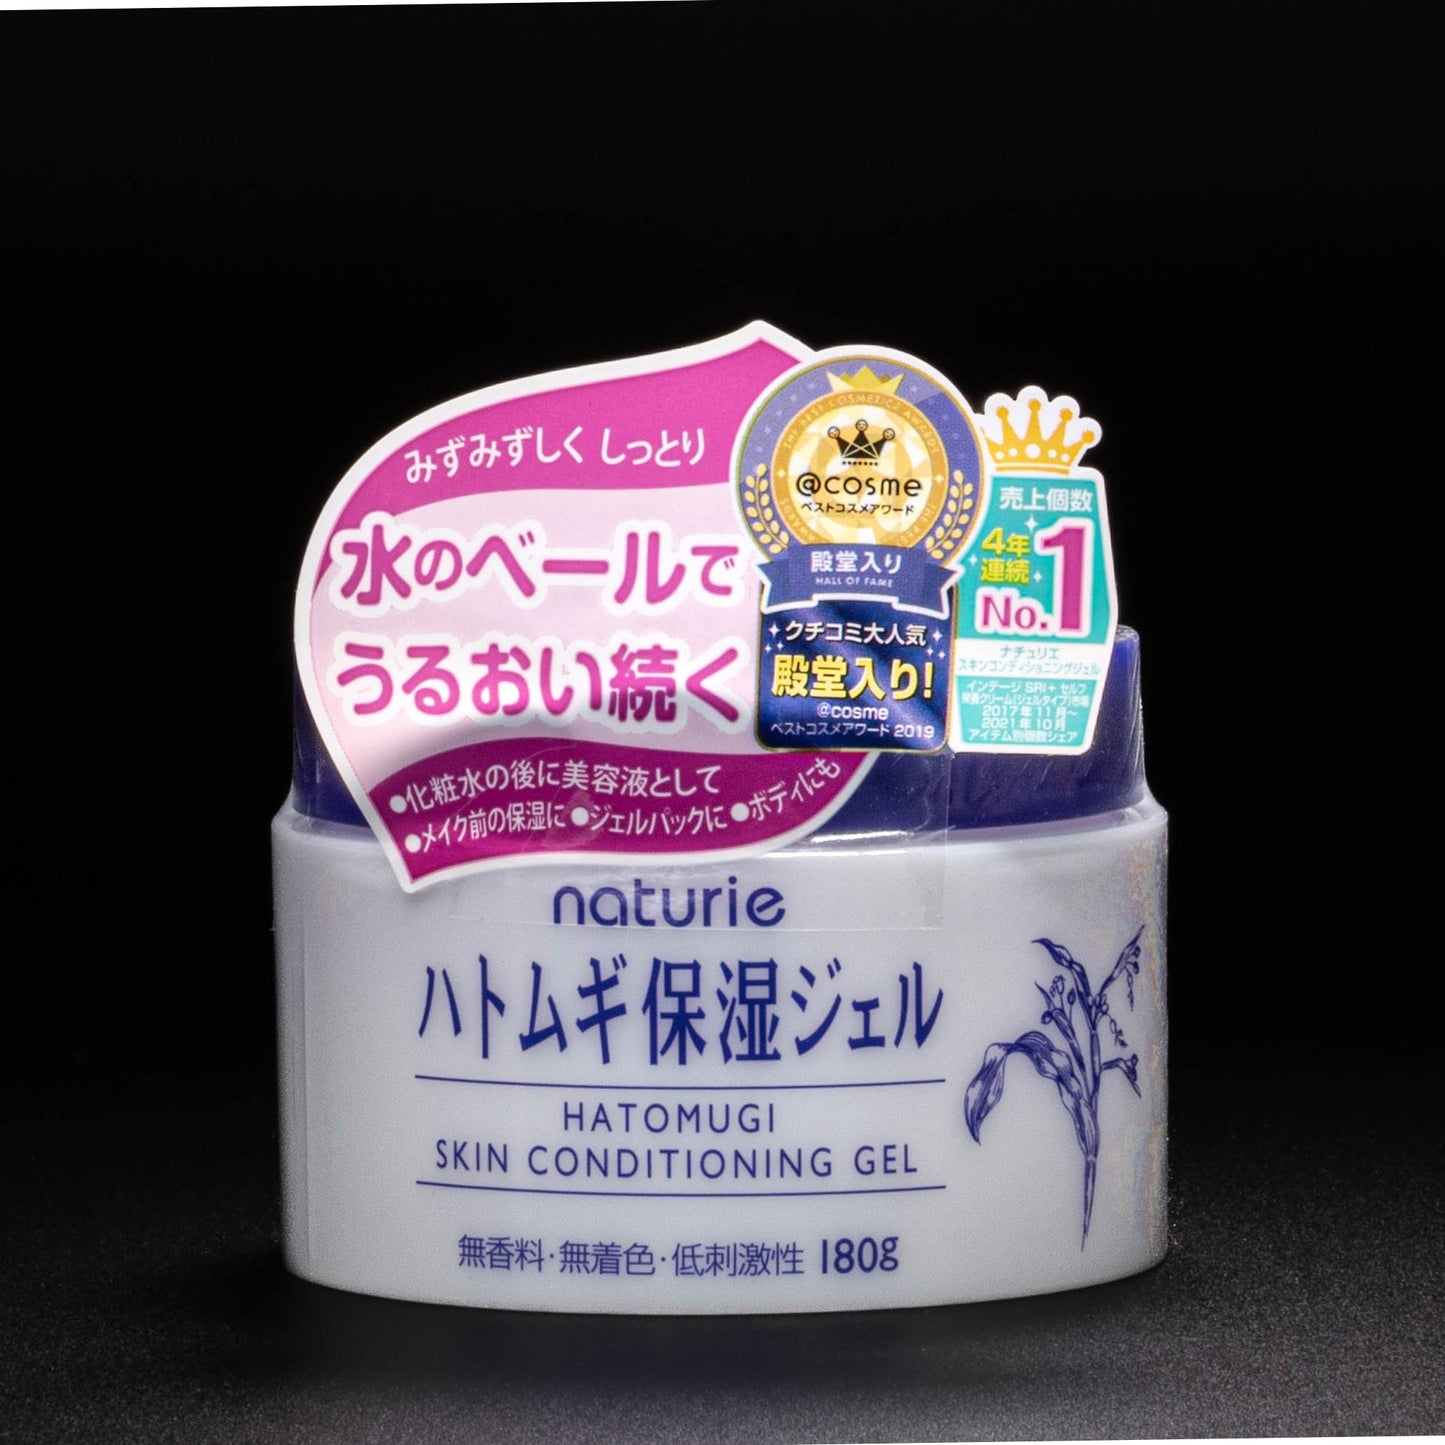 Hatomugi Skin Conditioning Gel | black background